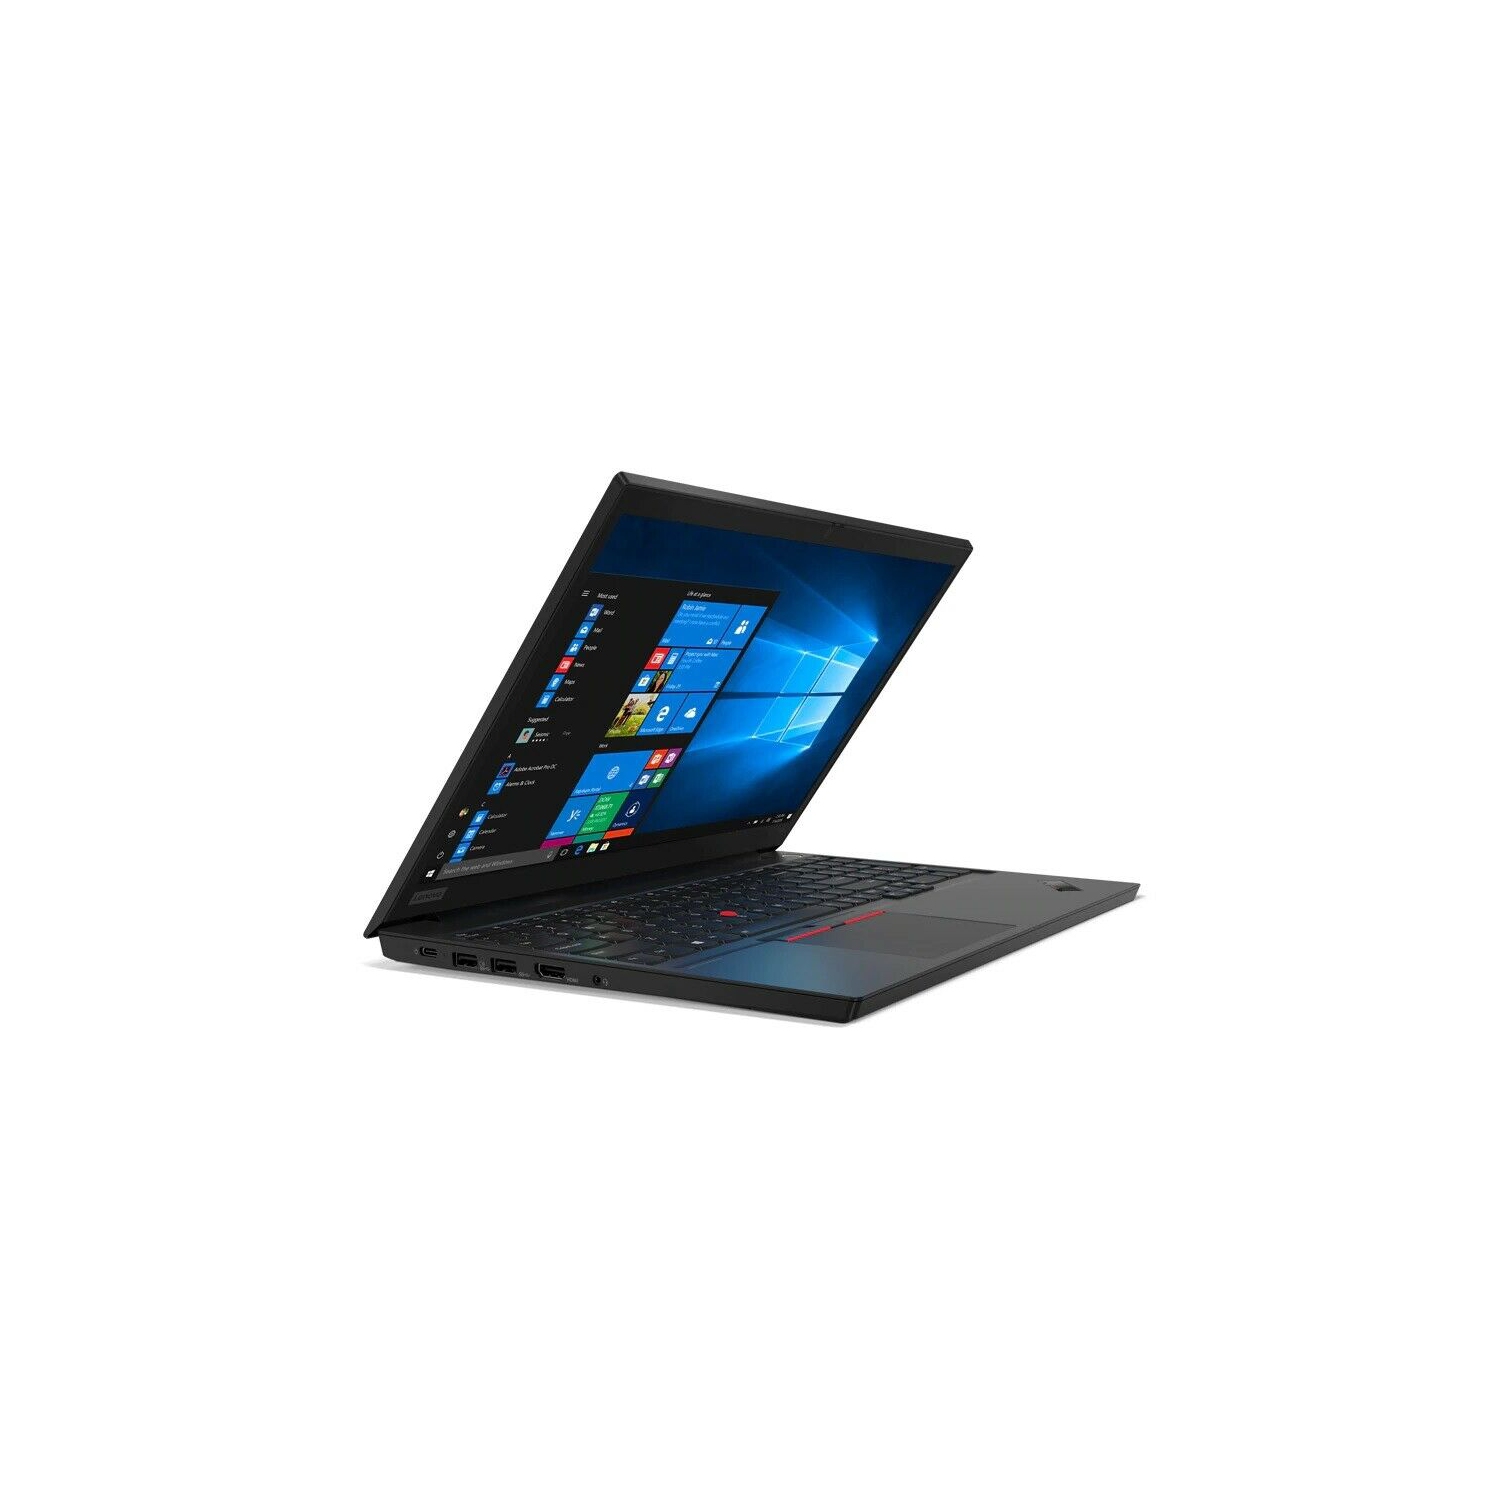 Lenovo ThinkPad E15 15.6" Notebook - 1920 x 1080 - Intel Core i5-10210U - 8GB RAM - 256GB SSD - 20RD005HUS - Black